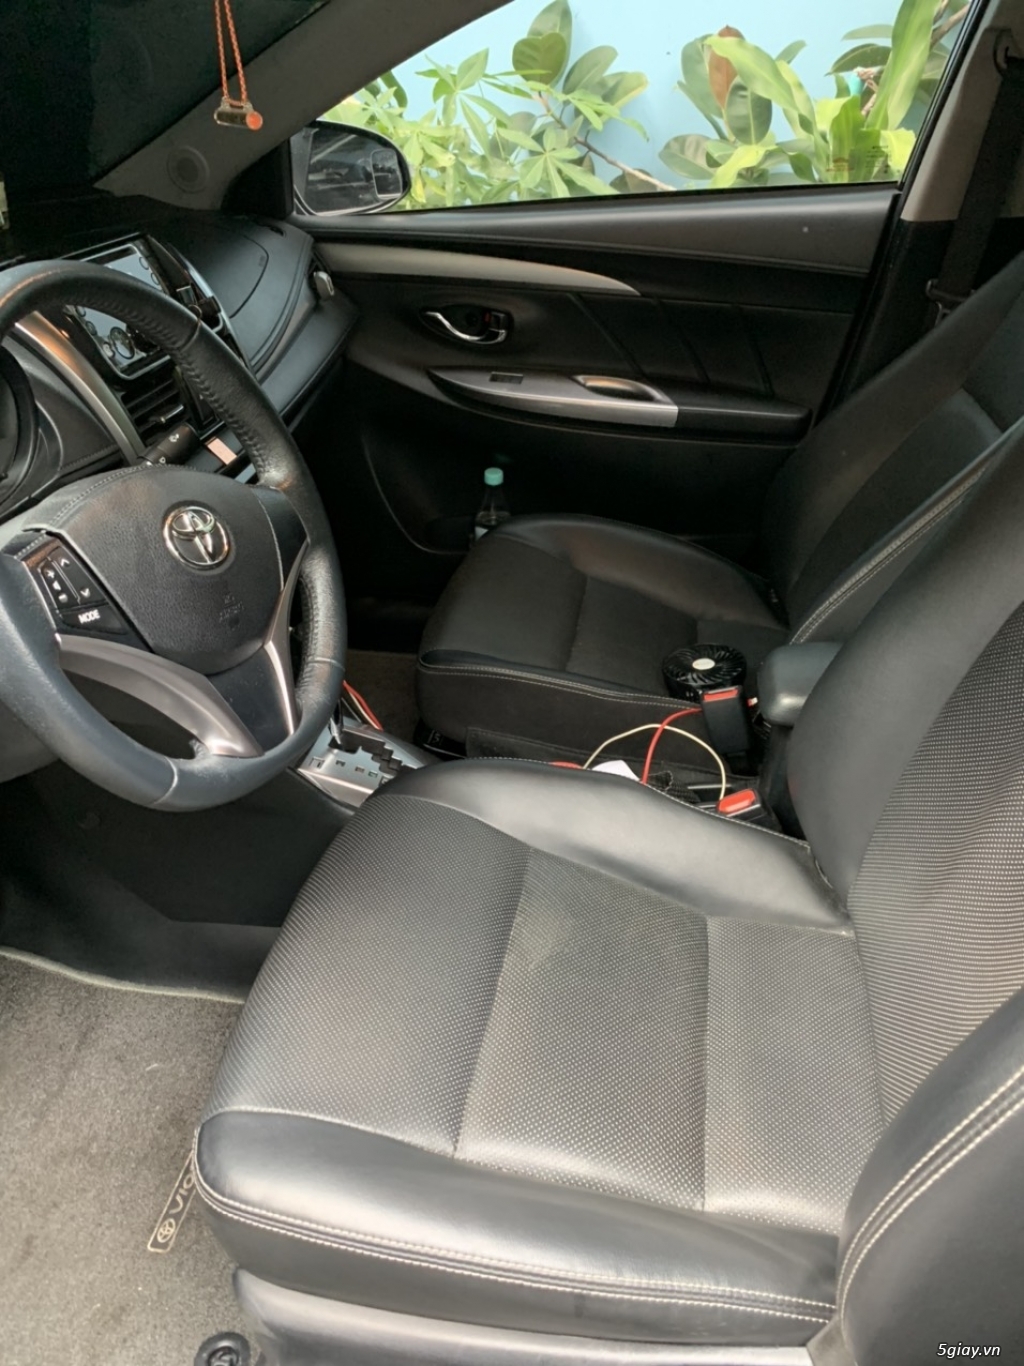 Bán xe Toyota Vios màu đen (năm sản xuất 2014) - 1